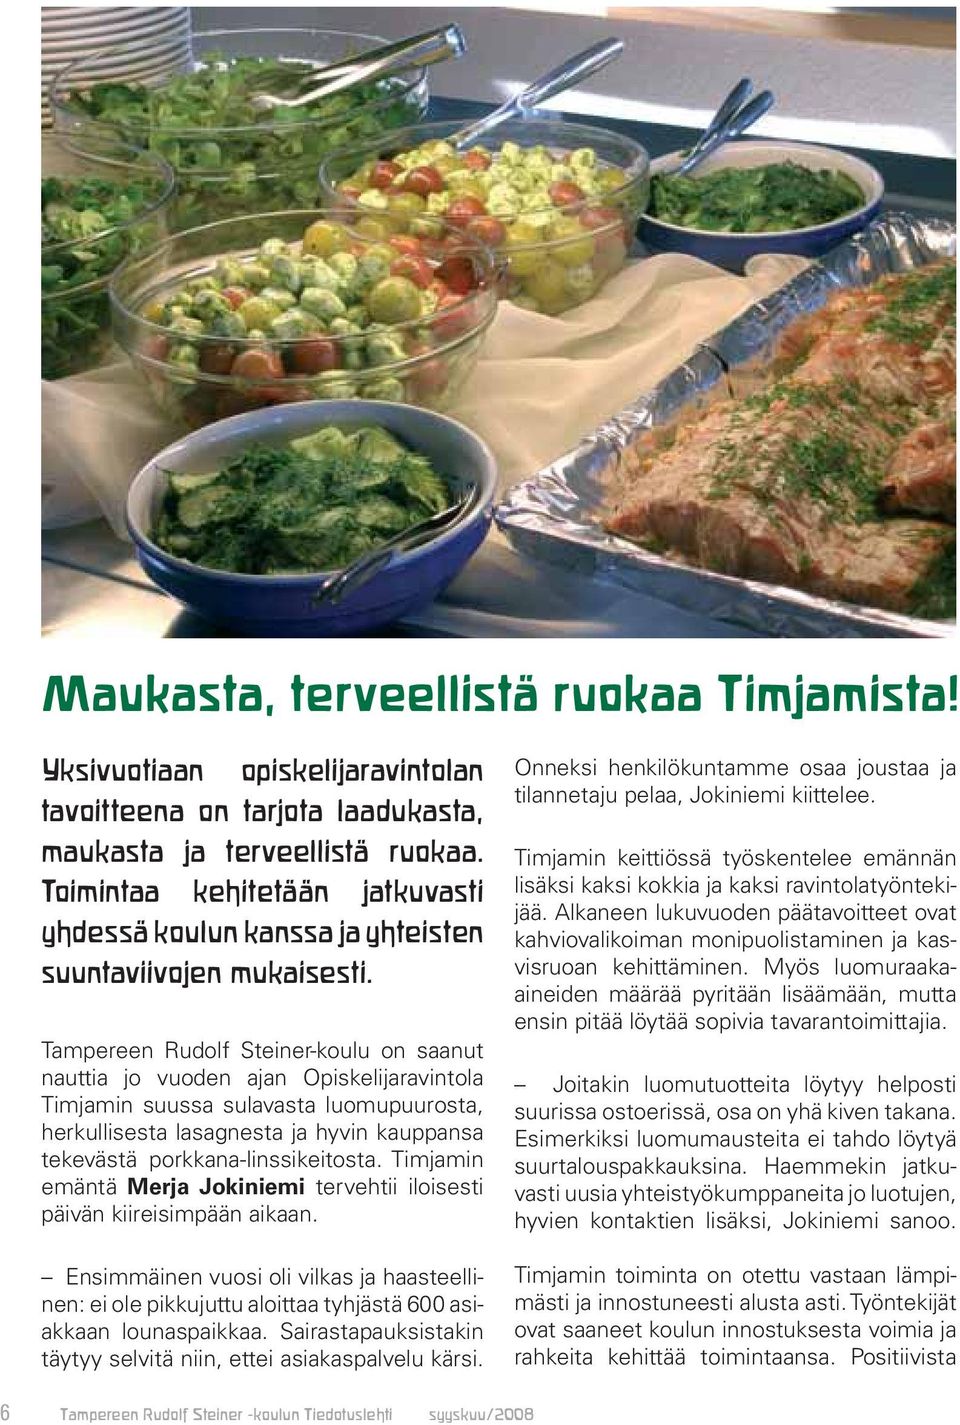 Tampereen Rudolf Steiner-koulu on saanut nauttia jo vuoden ajan Opiskelijaravintola Timjamin suussa sulavasta luomupuurosta, herkullisesta lasagnesta ja hyvin kauppansa tekevästä